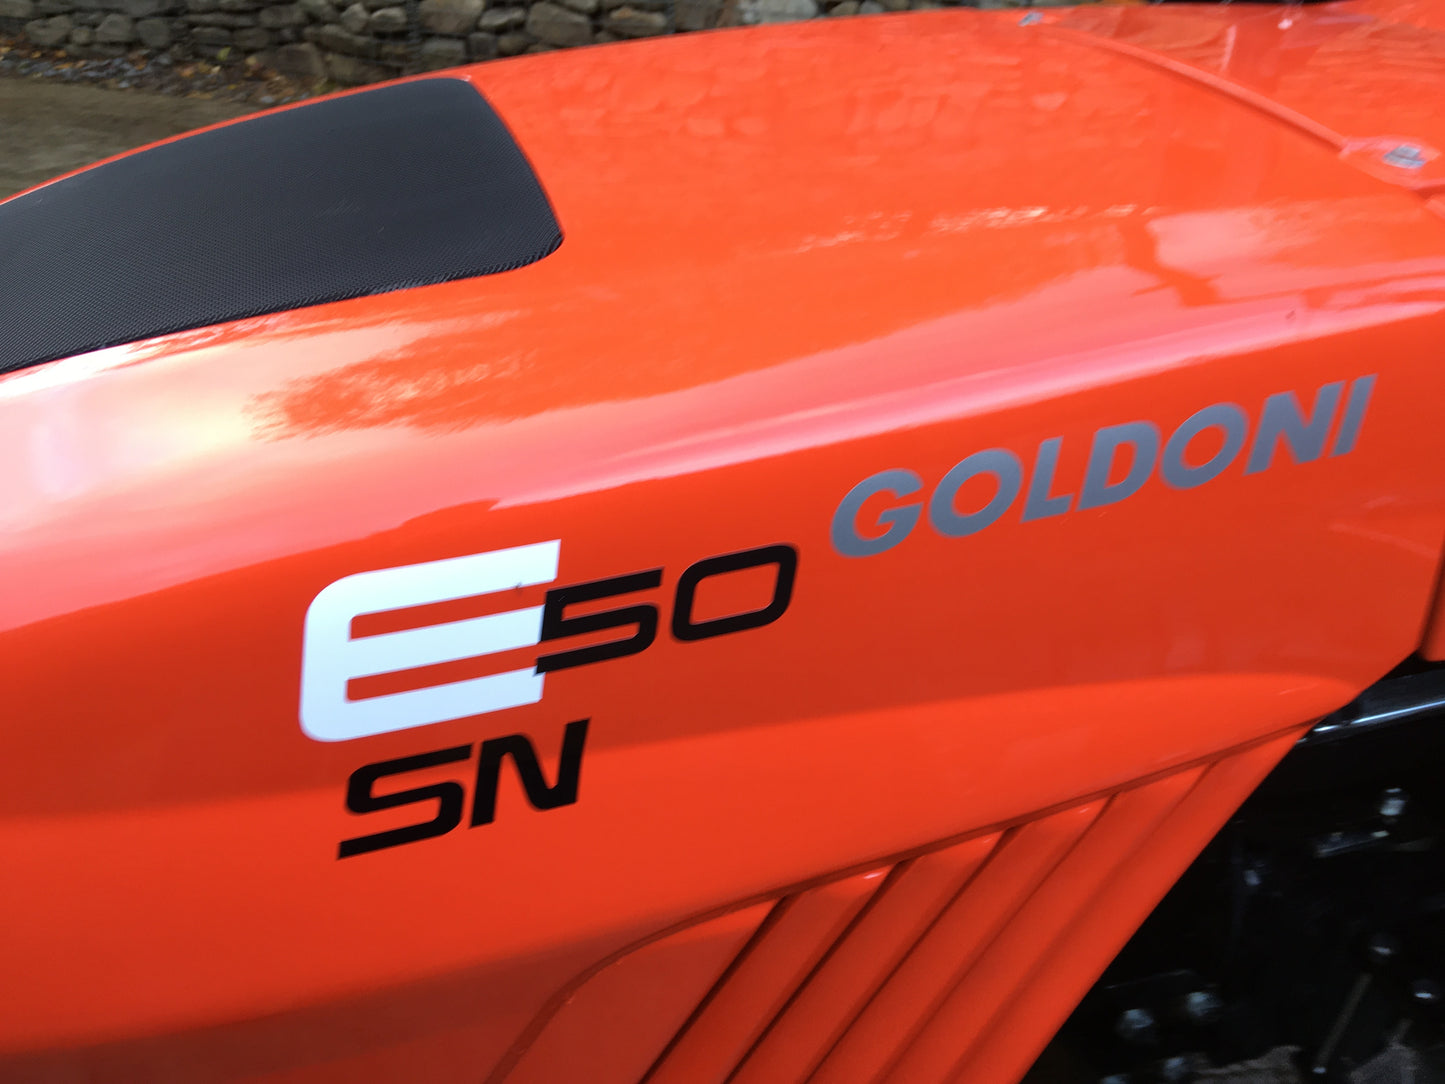 Goldoni E50 SN